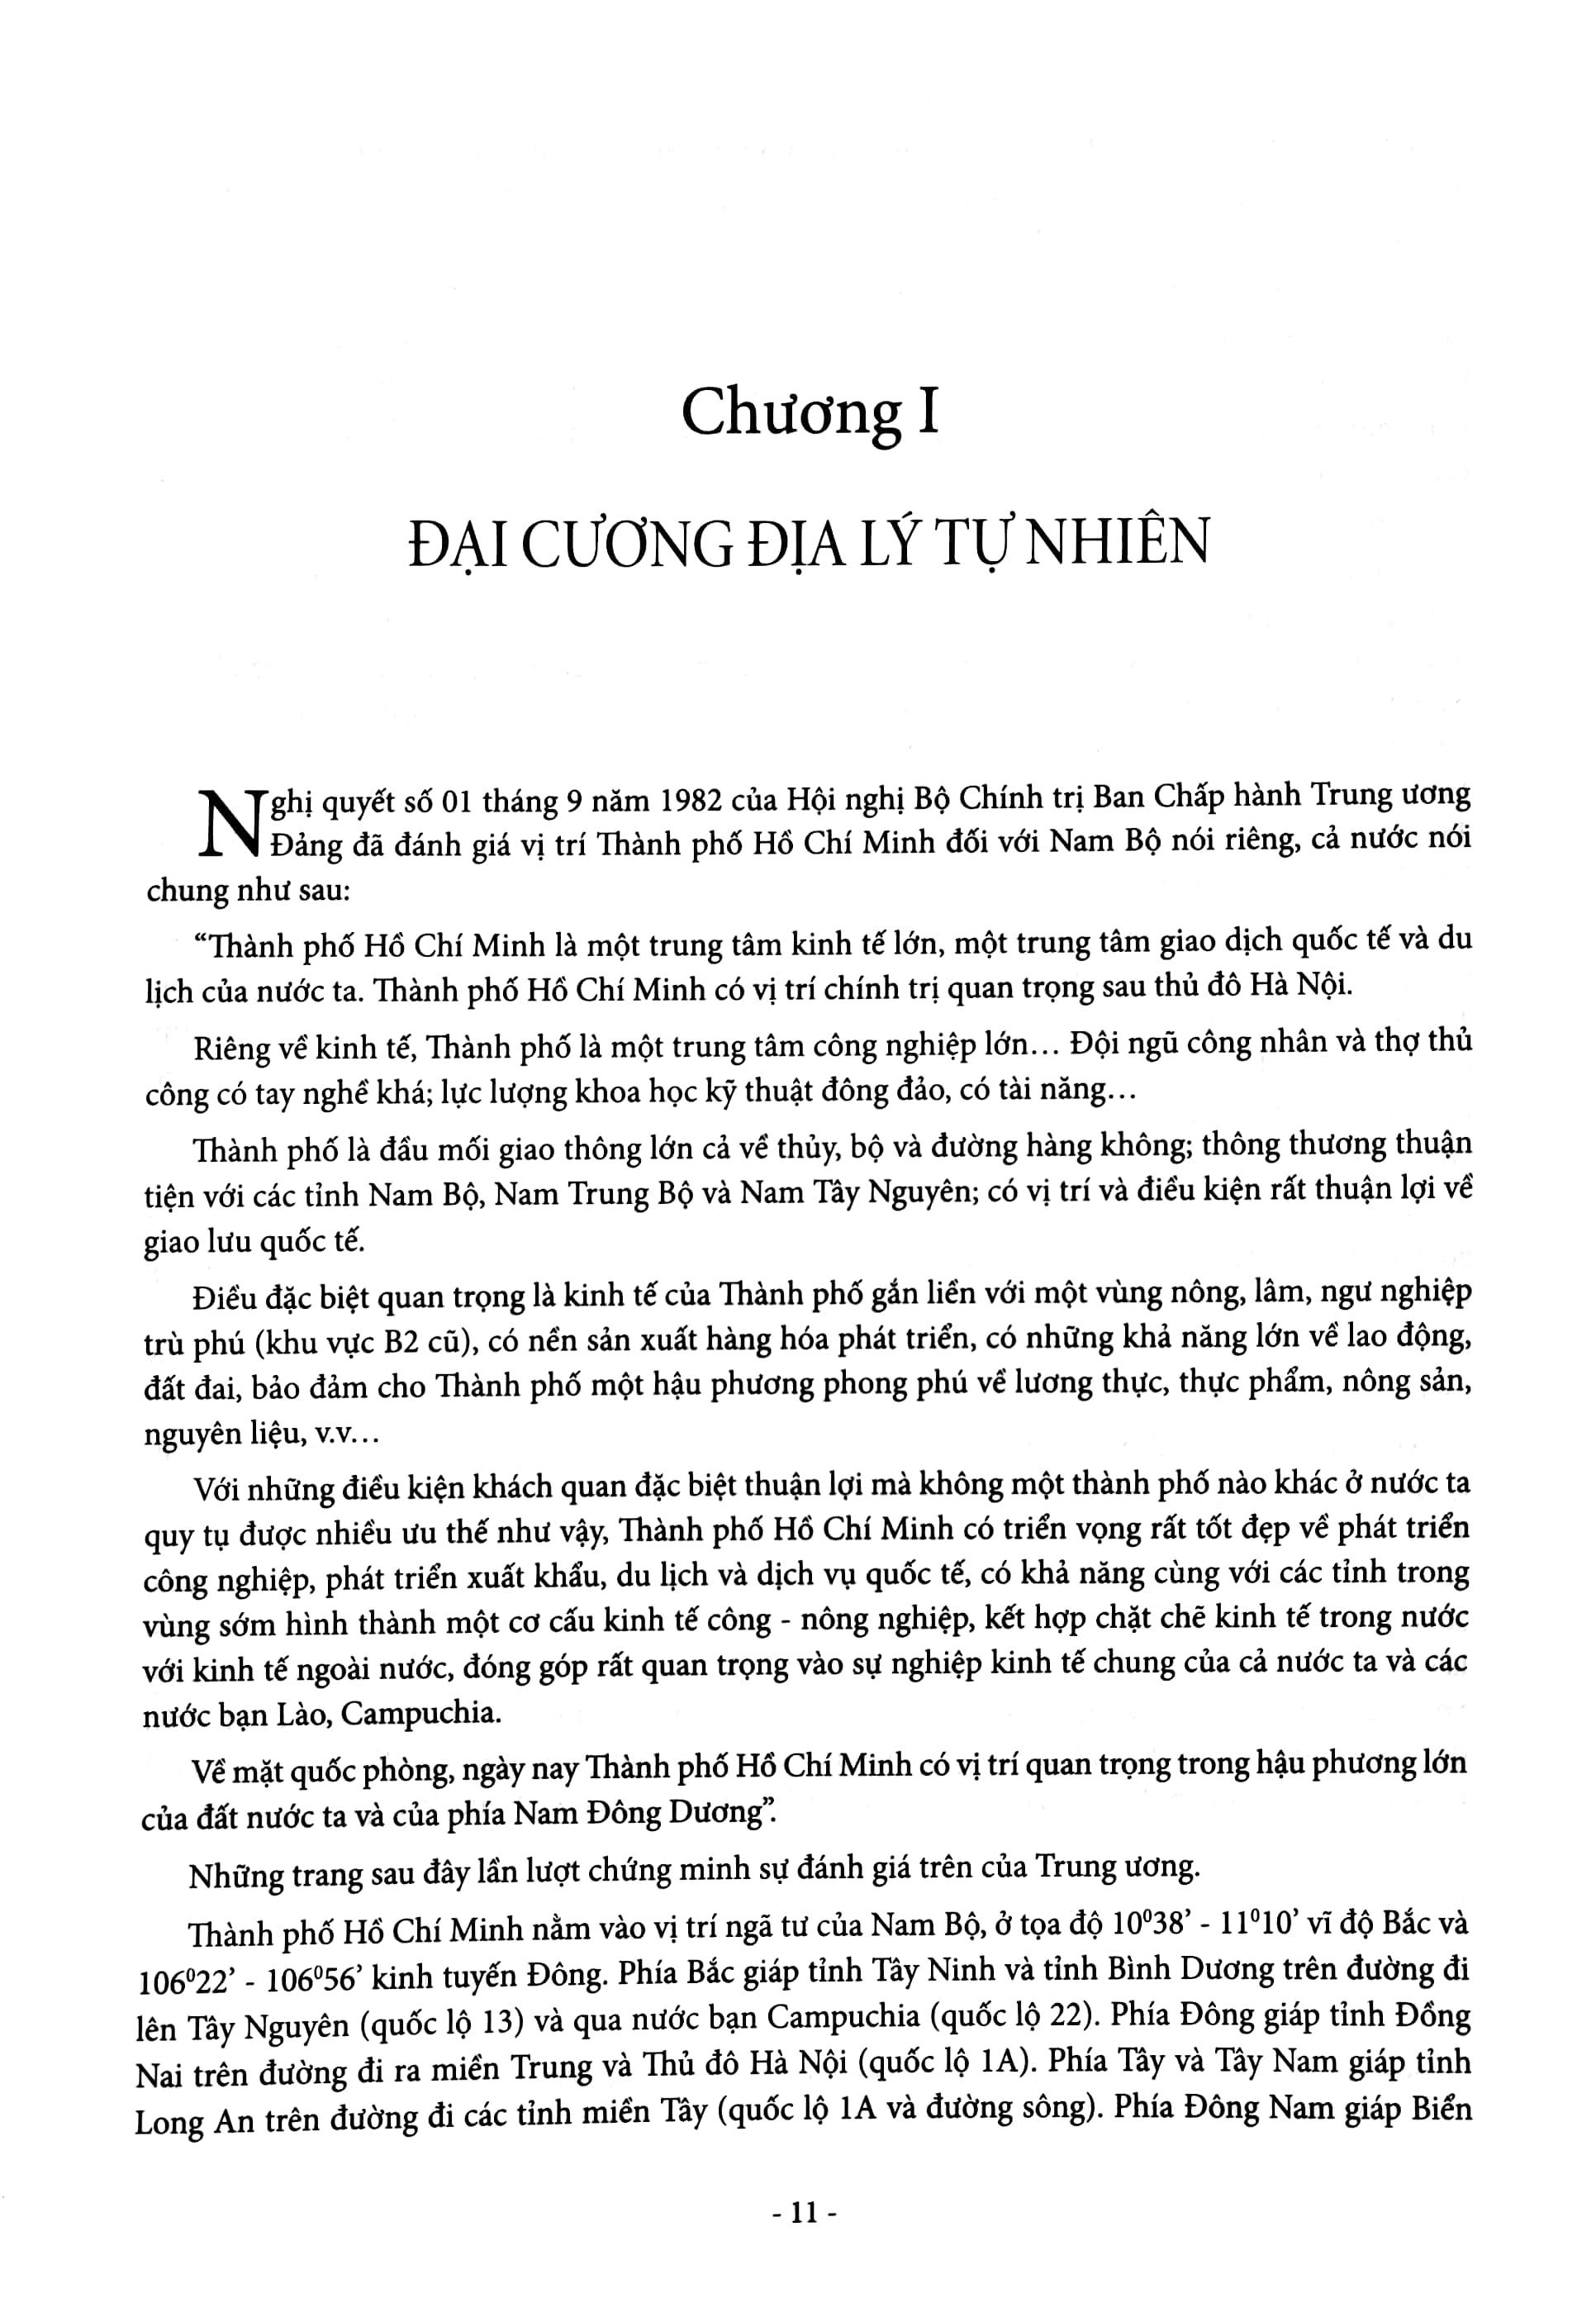 Gia Định - Sài Gòn - Thành Phố Hồ Chí Minh: Dặm Dài Lịch Sử 1698-2020 - Tập 1: 1698-1945 - Bìa Cứng PDF